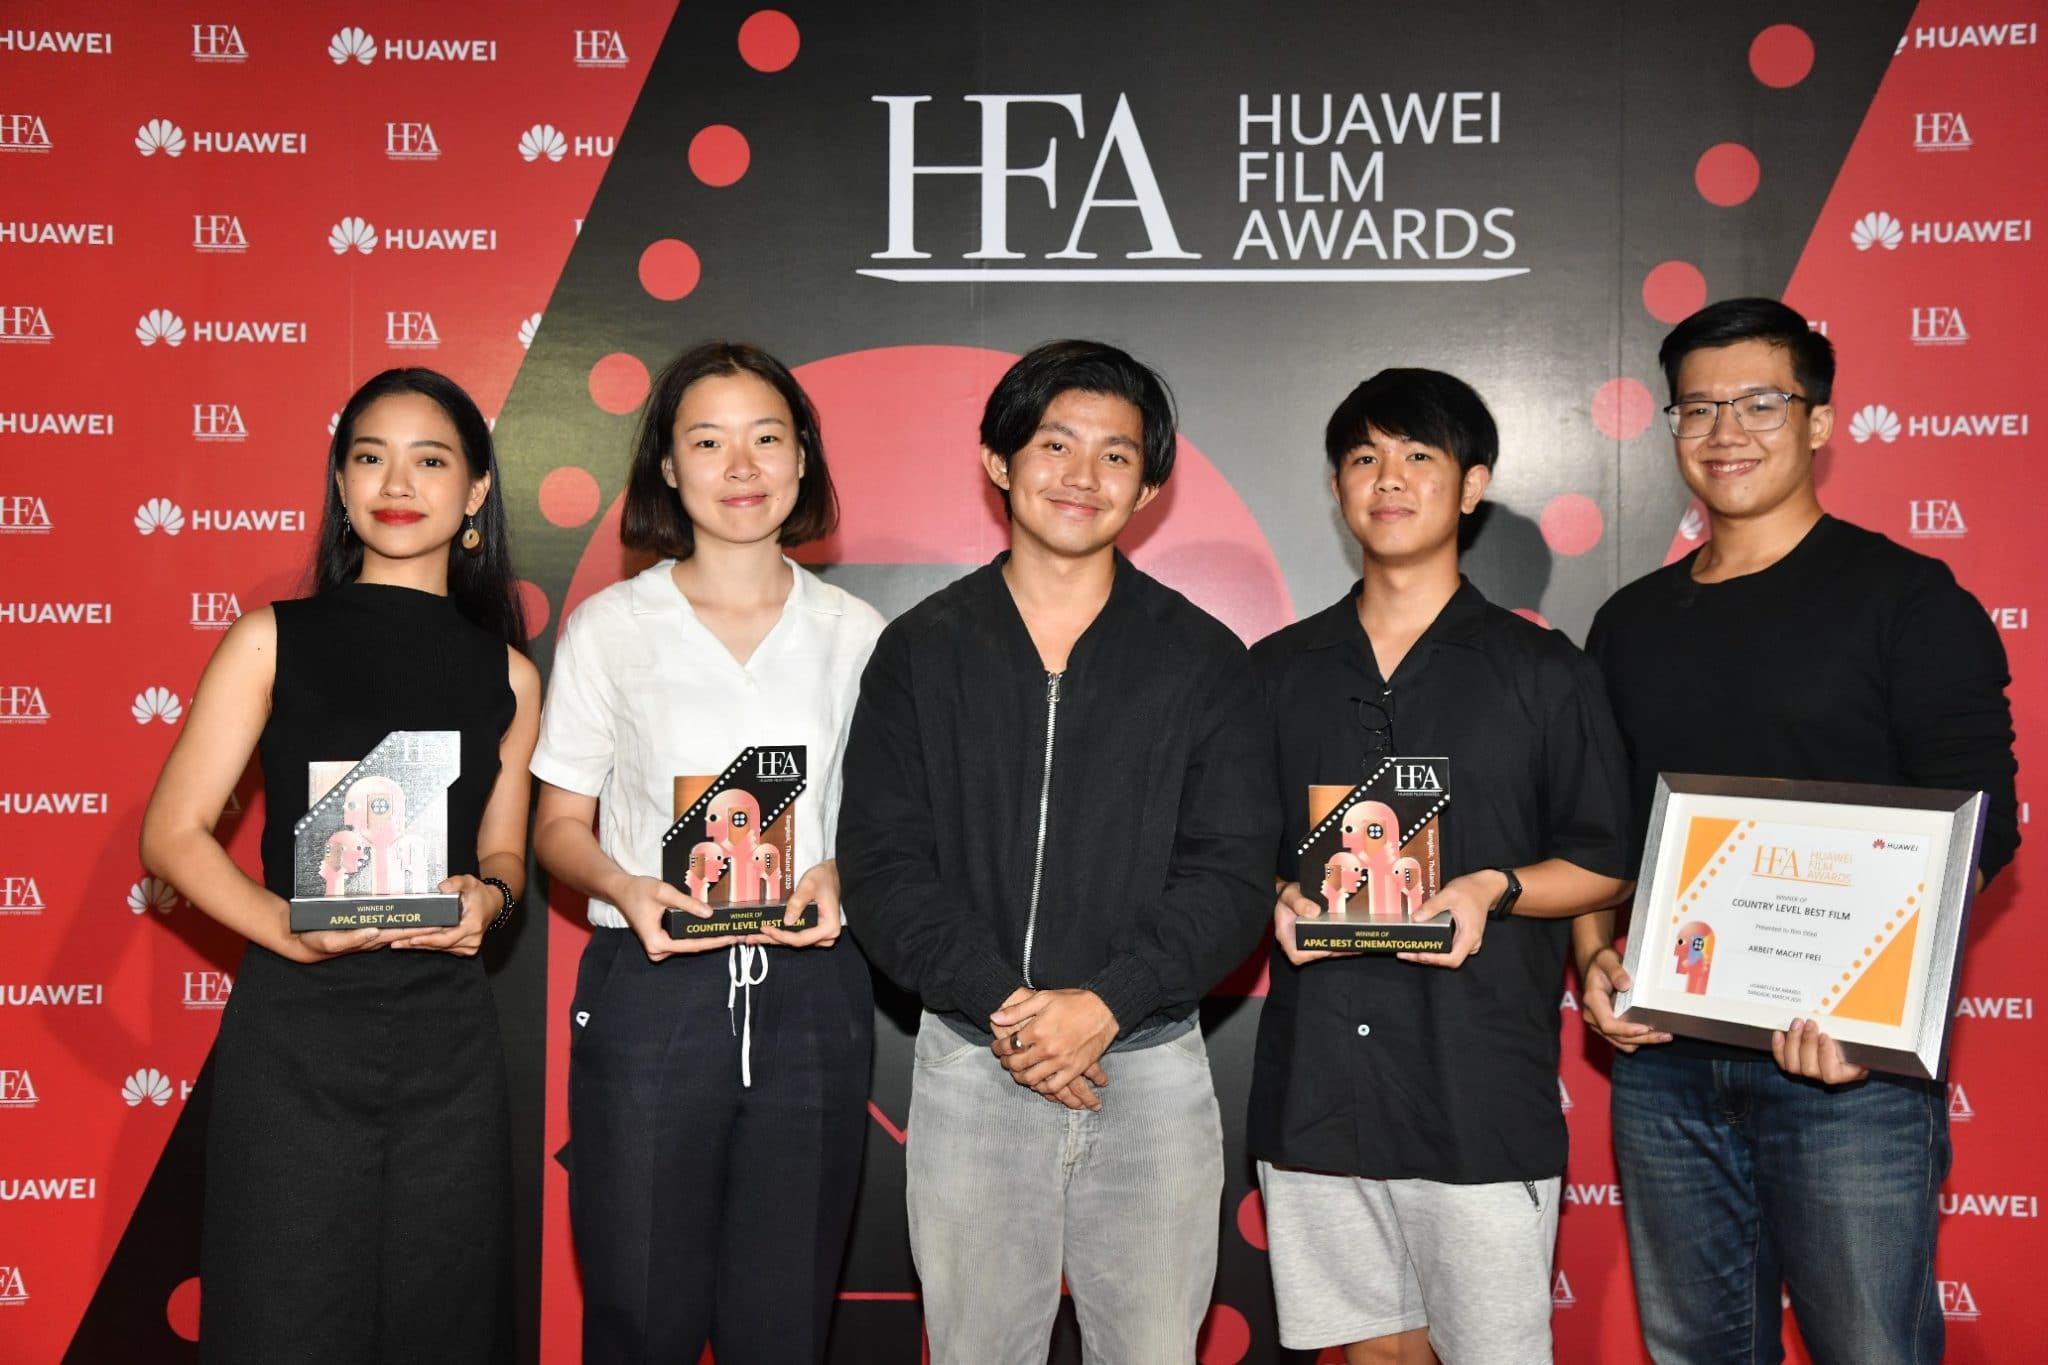 HUAWEI ประกาศสุดยอดภาพยนตร์สั้นจาก HUAWEI Film Awards ในภูมิภาคเอเชียแปซิฟิก หนุ่มไทยยืนหนึ่ง คว้า 3 รางวัล 1